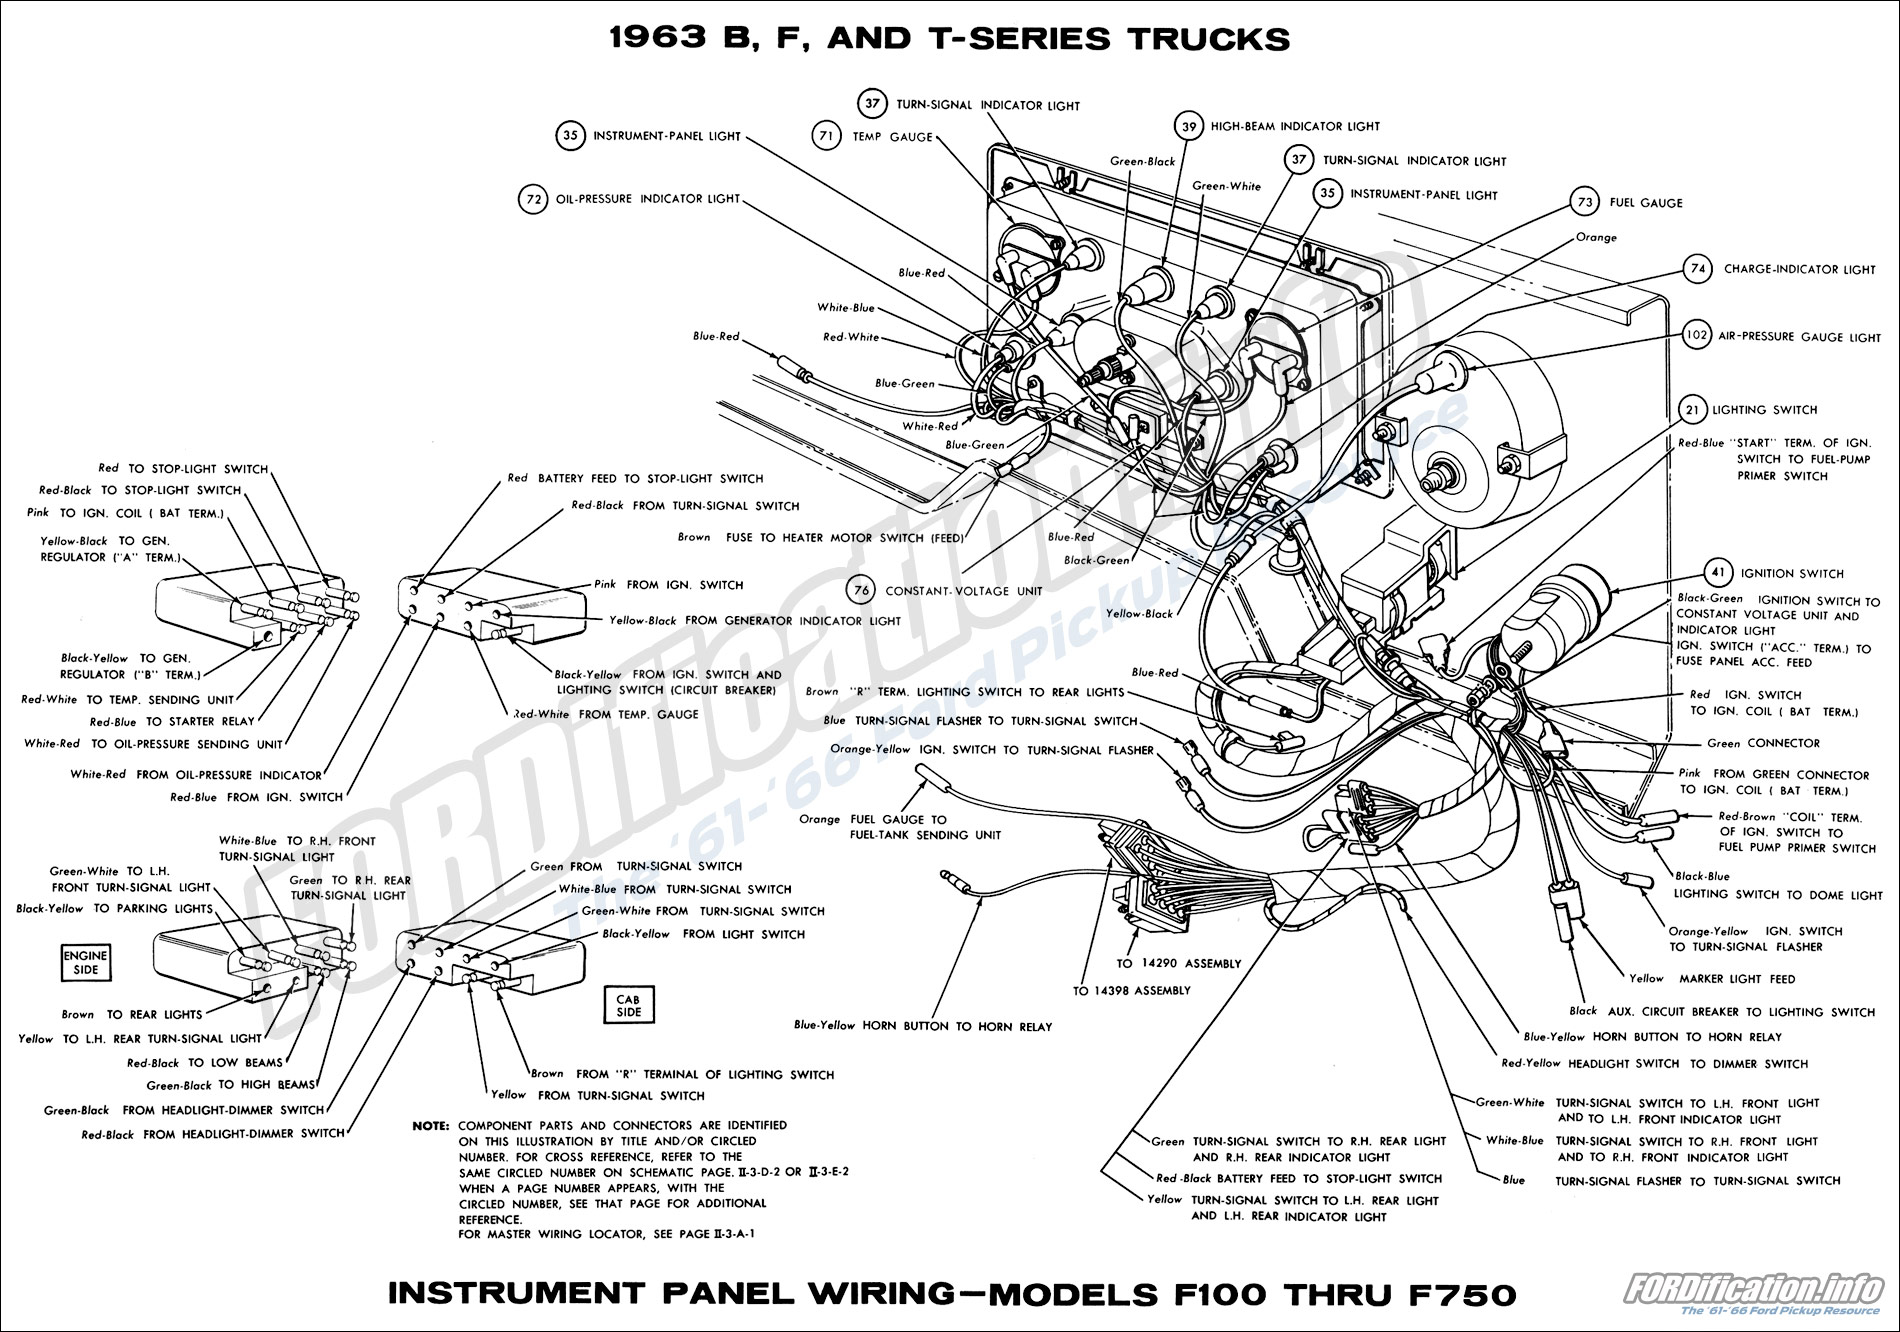 Ford Fuel Gauge Wiring Schematic - Wiring Diagram